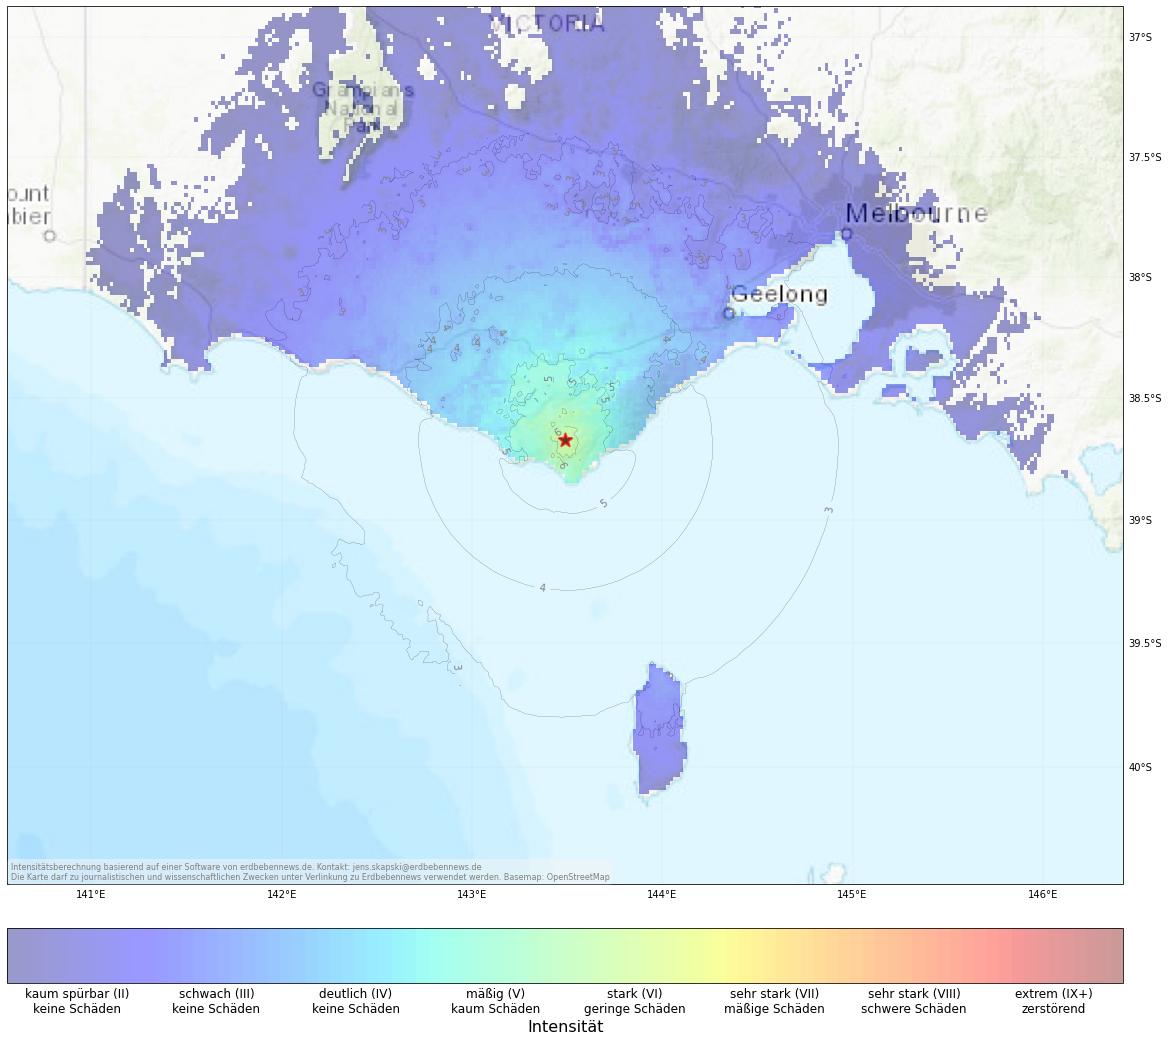 Berechnete Intensität (ShakeMap) des Erdbebens der Stärke 5.1 am 21. Oktober, 17:11 Uhr in Australien